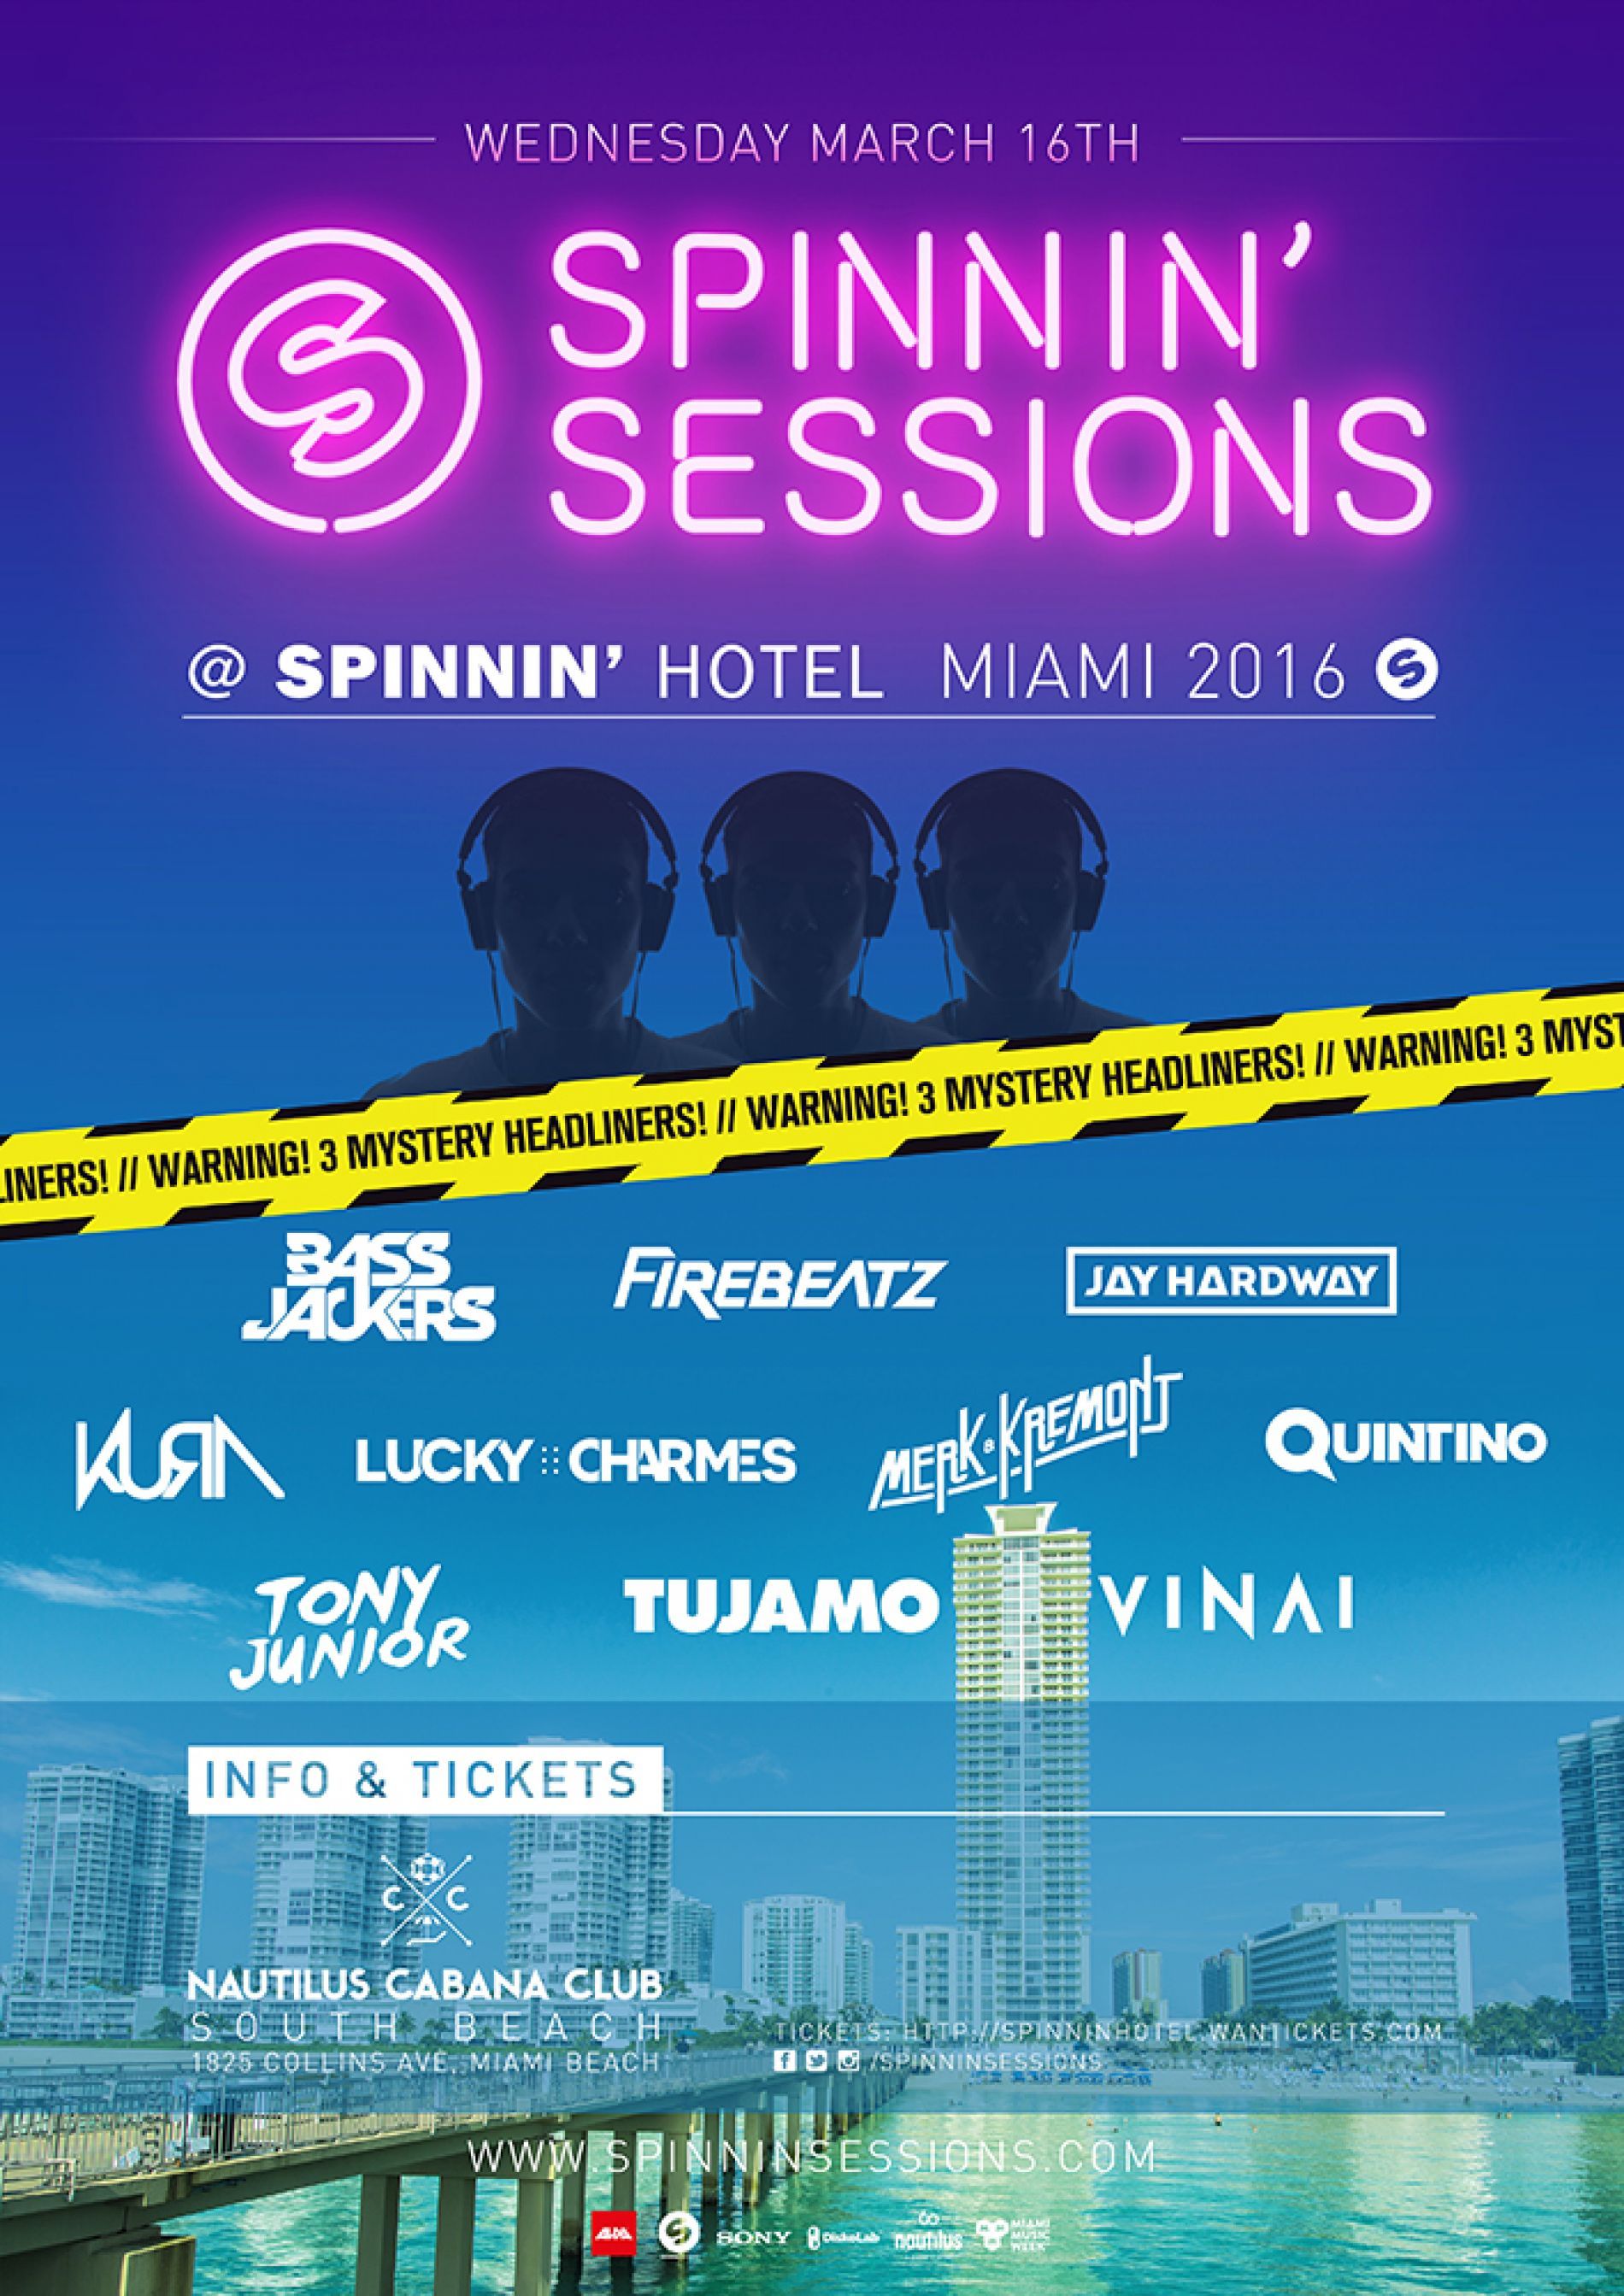 Spinnin' Sessions Spinnin' Hotel Miami 2016